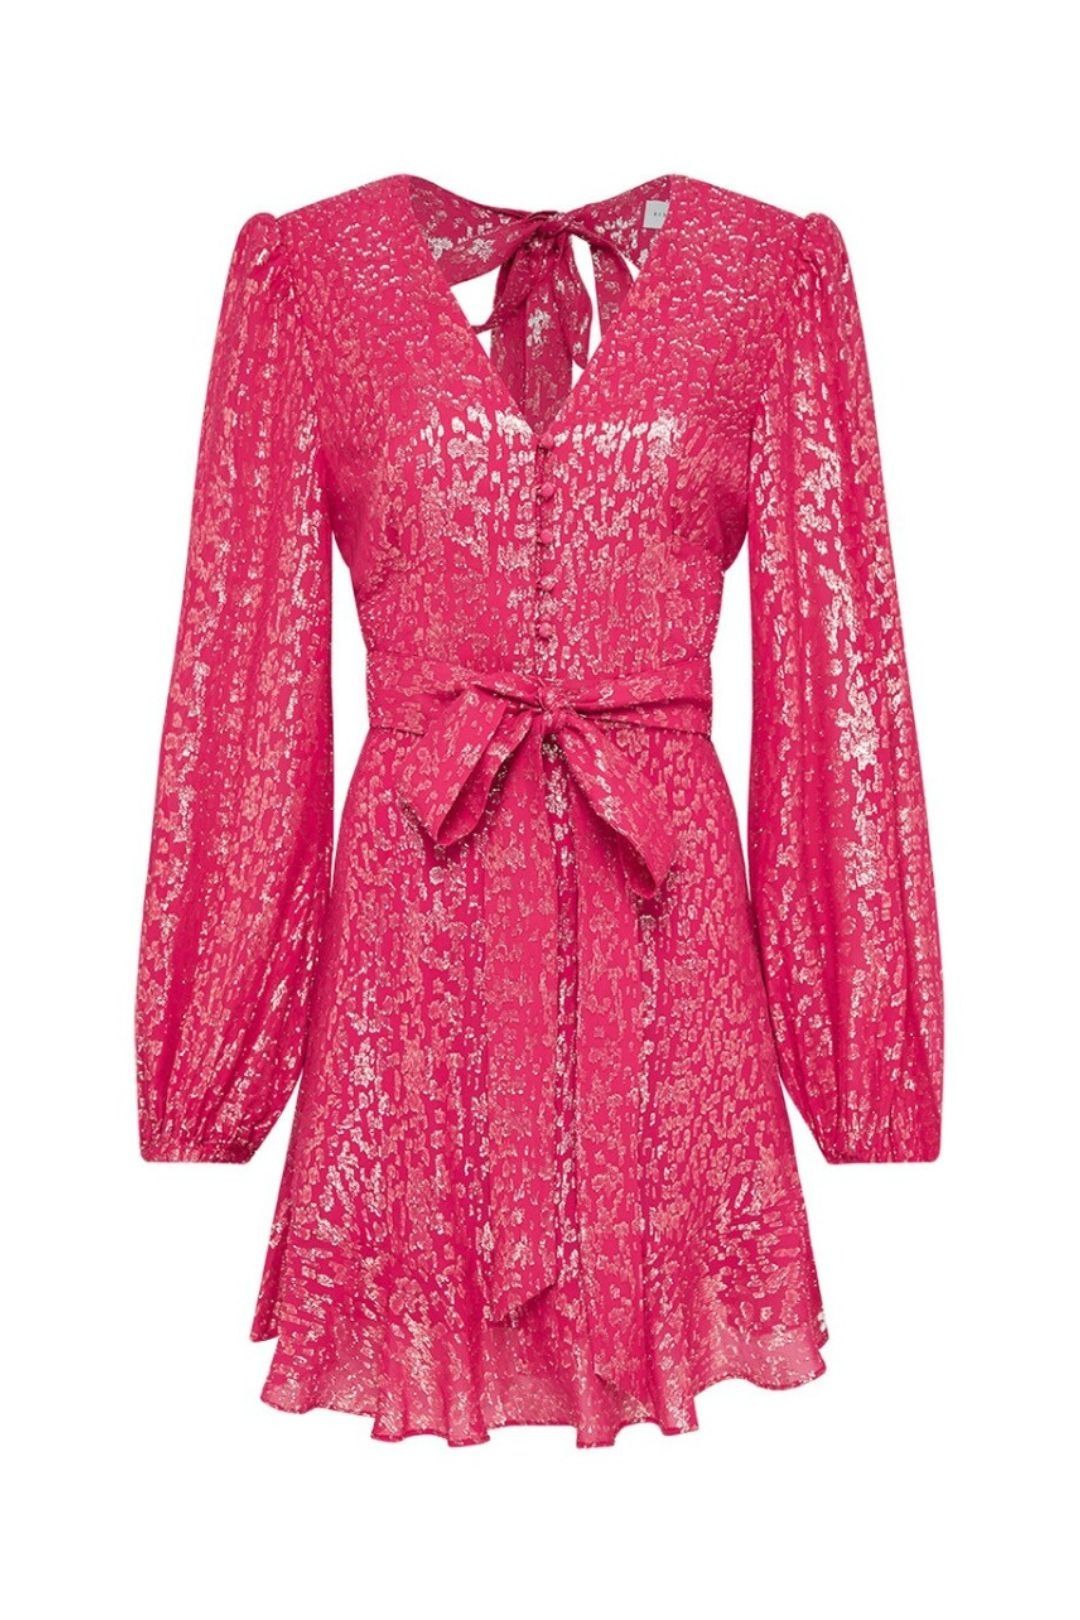 Pink Designer Dress Rental | Browse Our Collection | GlamCorner